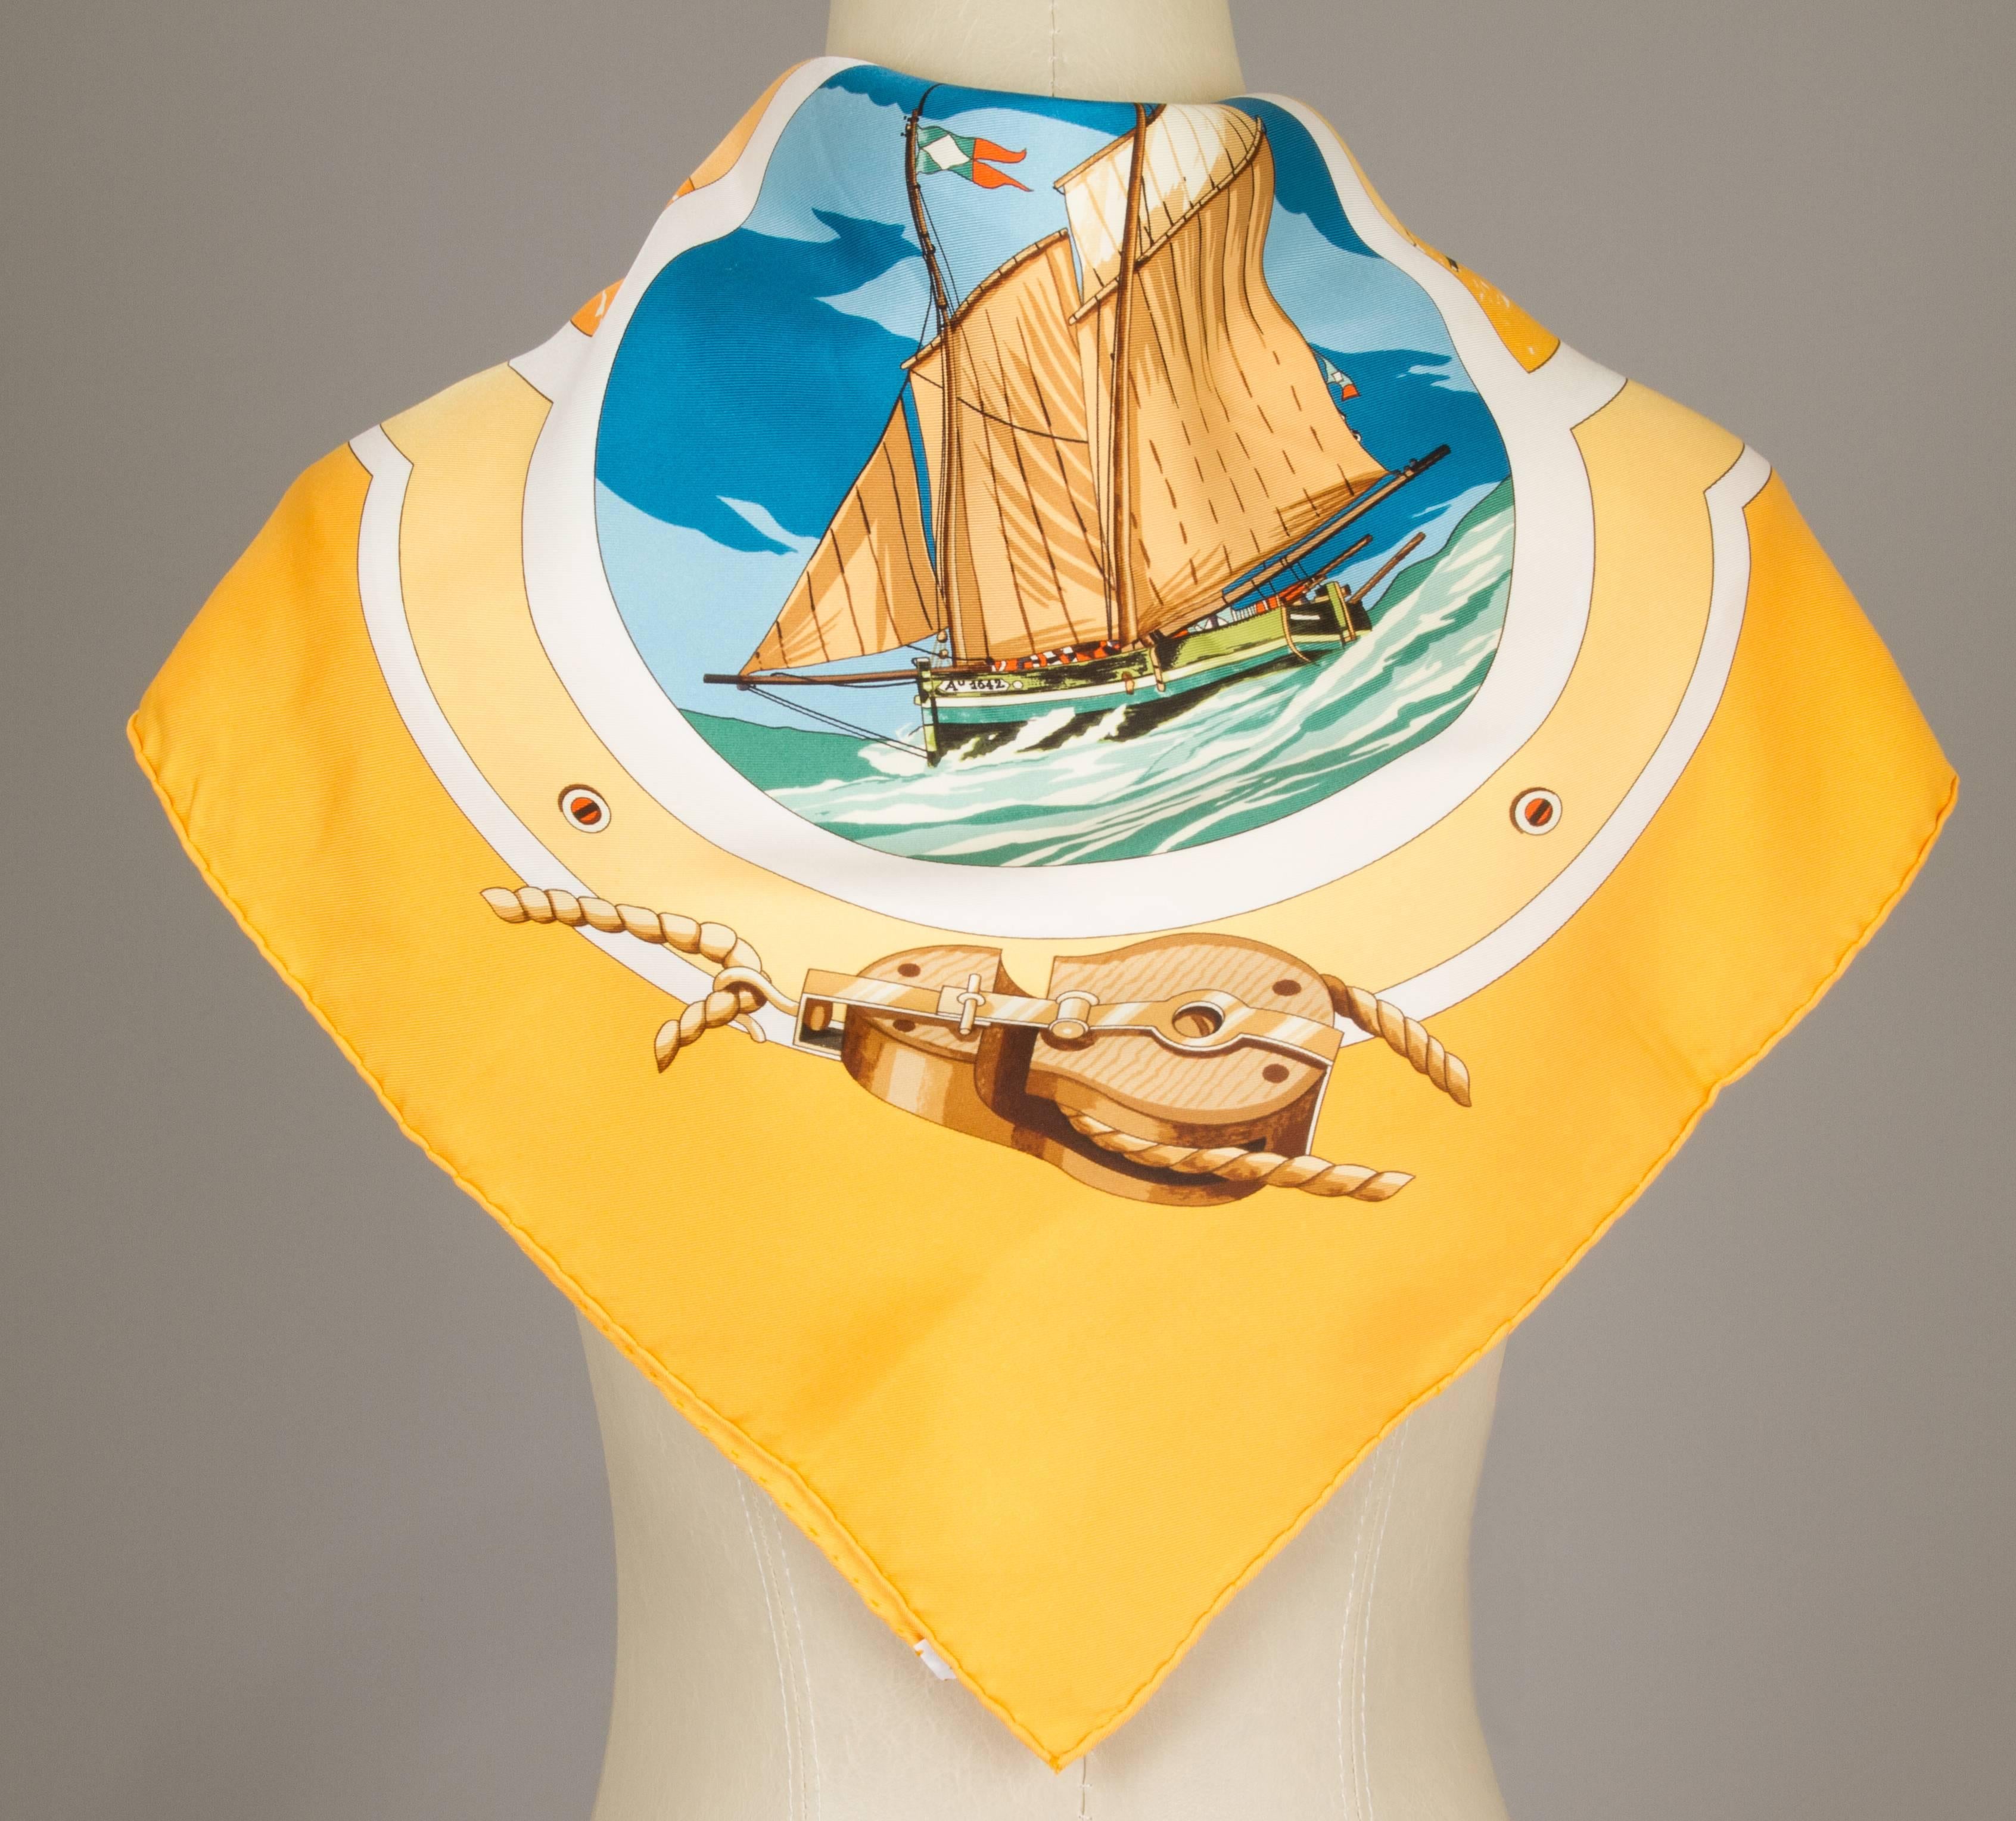 Vintage Hermes Silk Scarf 